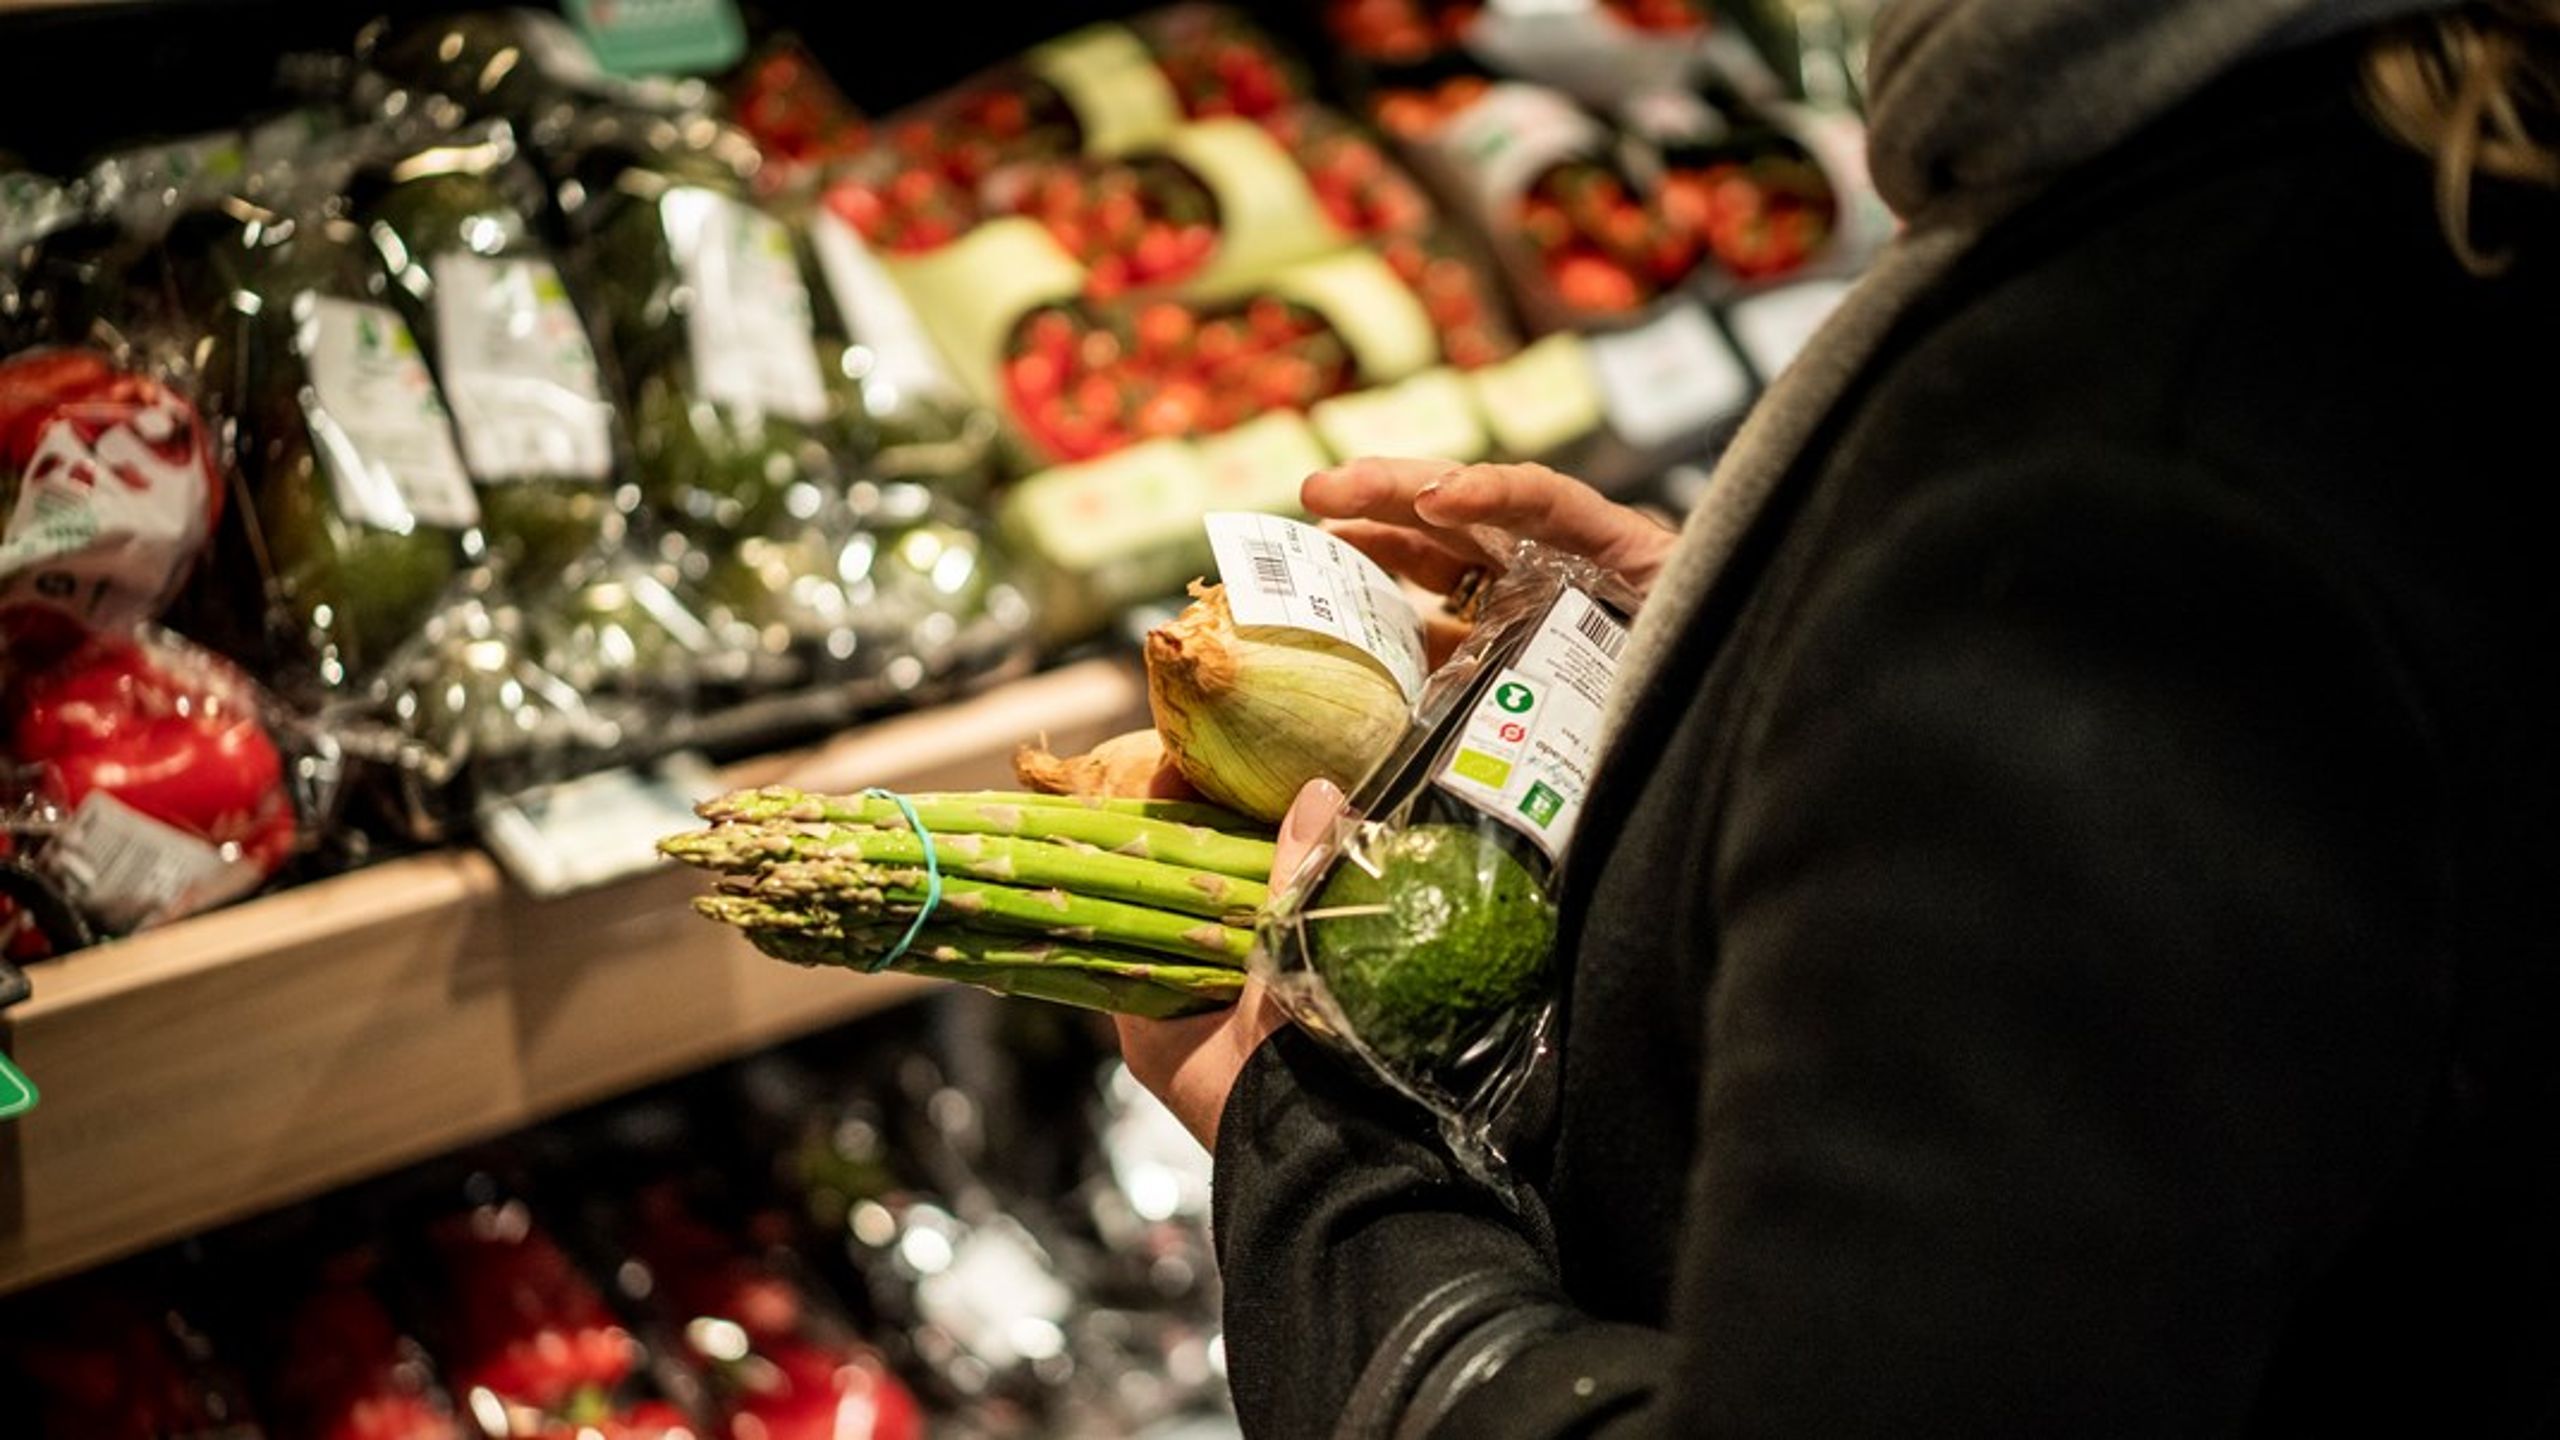 Pris- og afgiftssætningen skal ændres. Der skal indføres markant højere afgifter på usunde fødevarer og være lavere priser på sunde fødevarer som for eksempel fisk og frugt, skriver Camilla Noelle Rathcke.